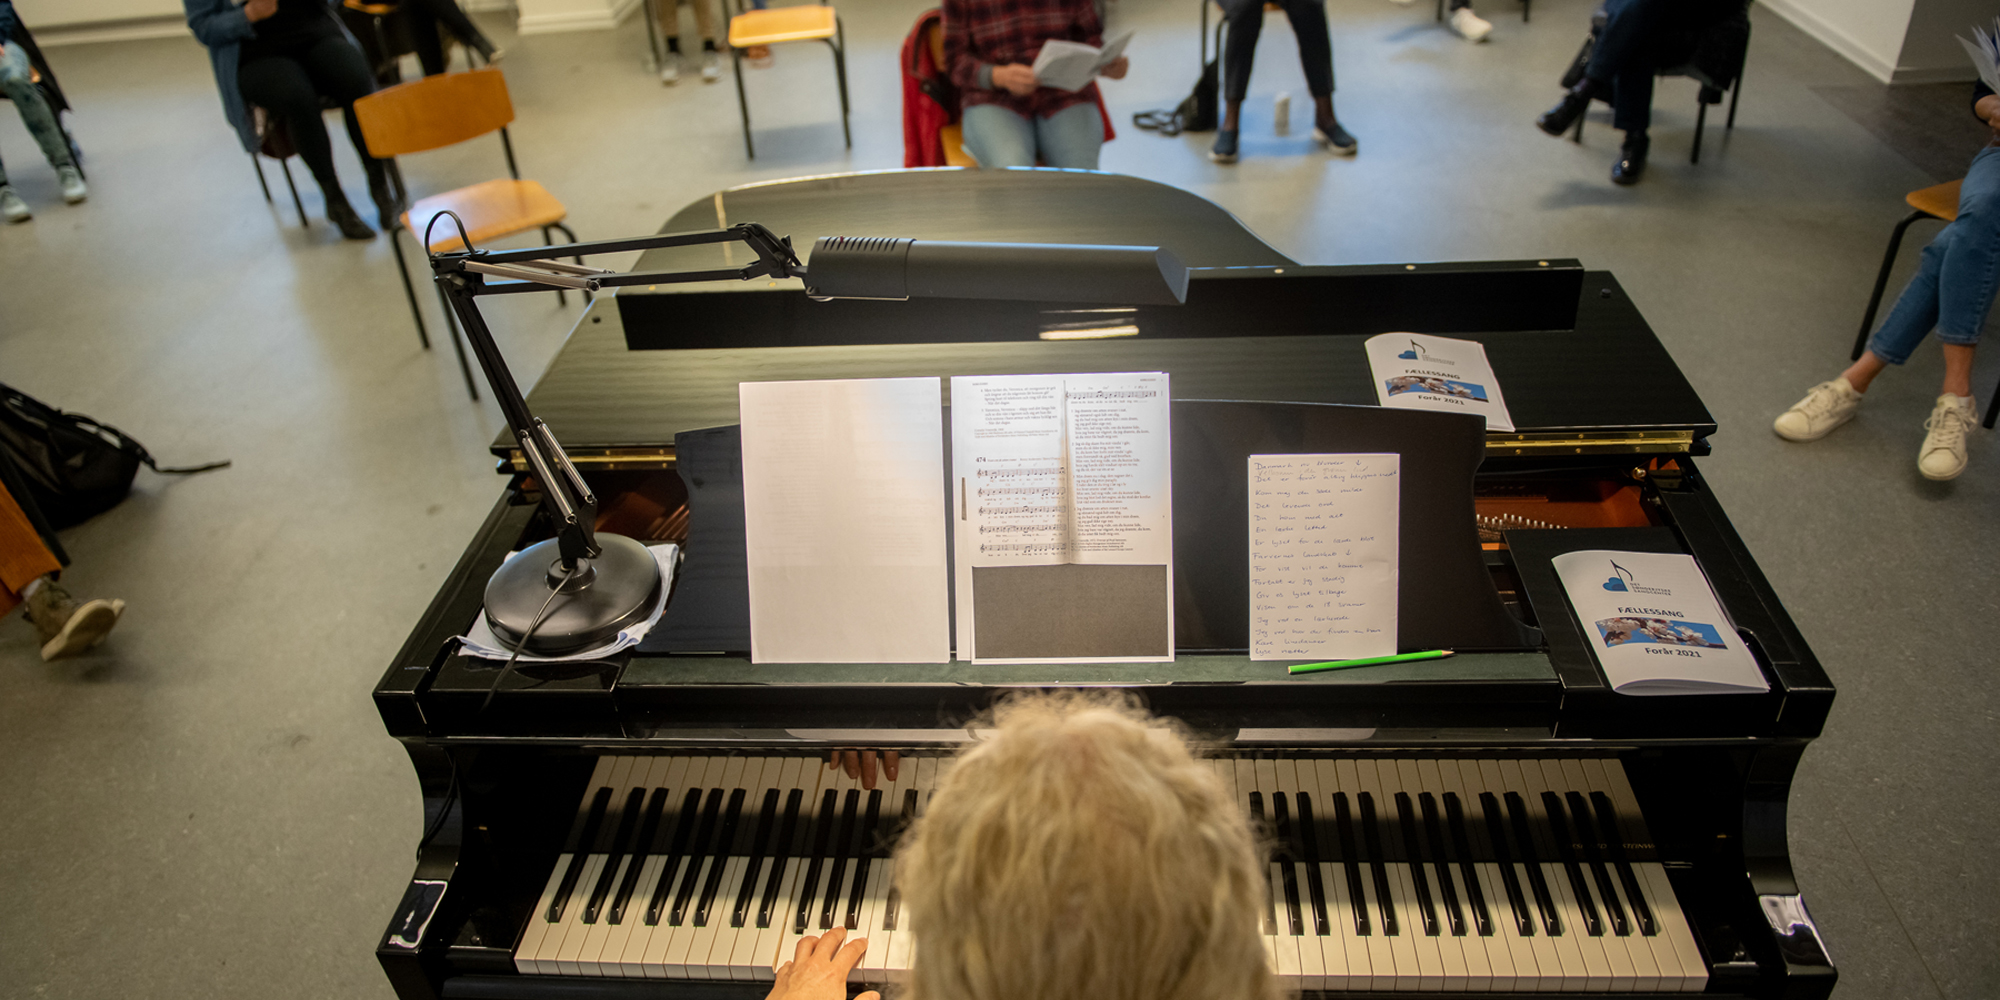 FOF Sønderjylland Fællessang klaverspiller foran siddende personer